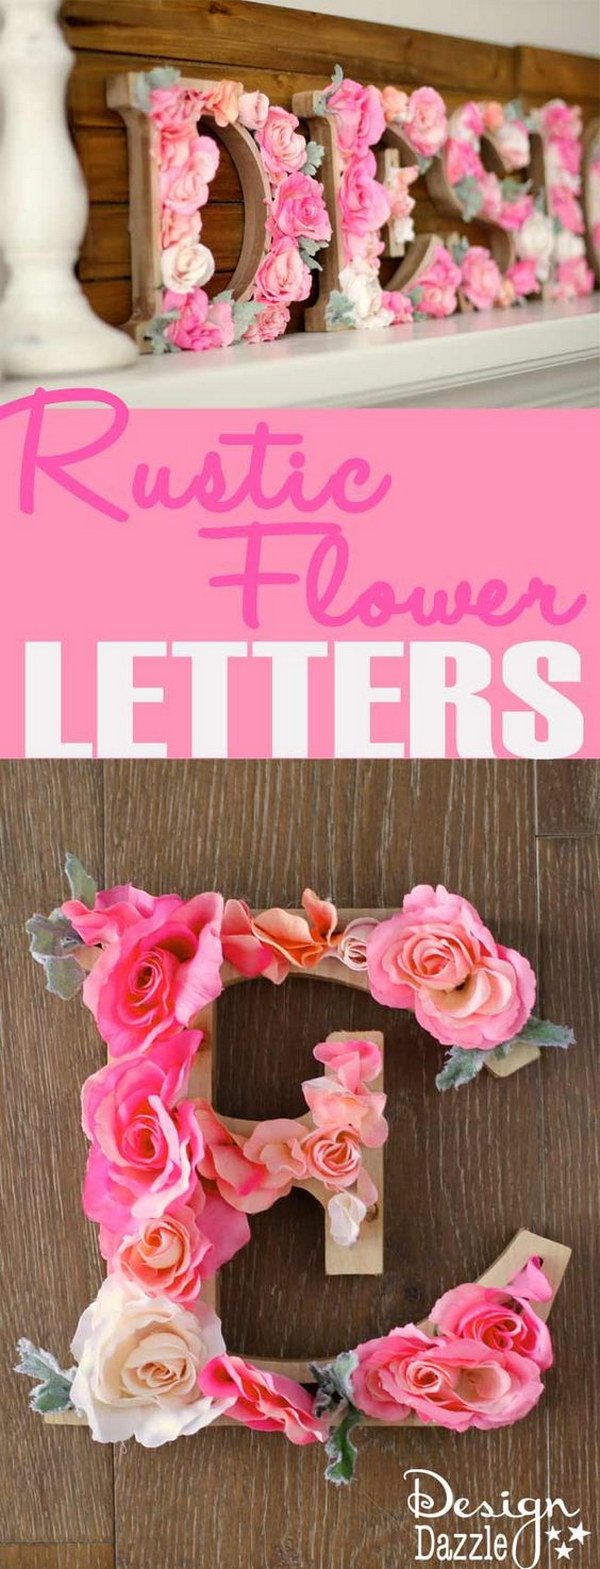 Rustic Flower Letters Tutorial 